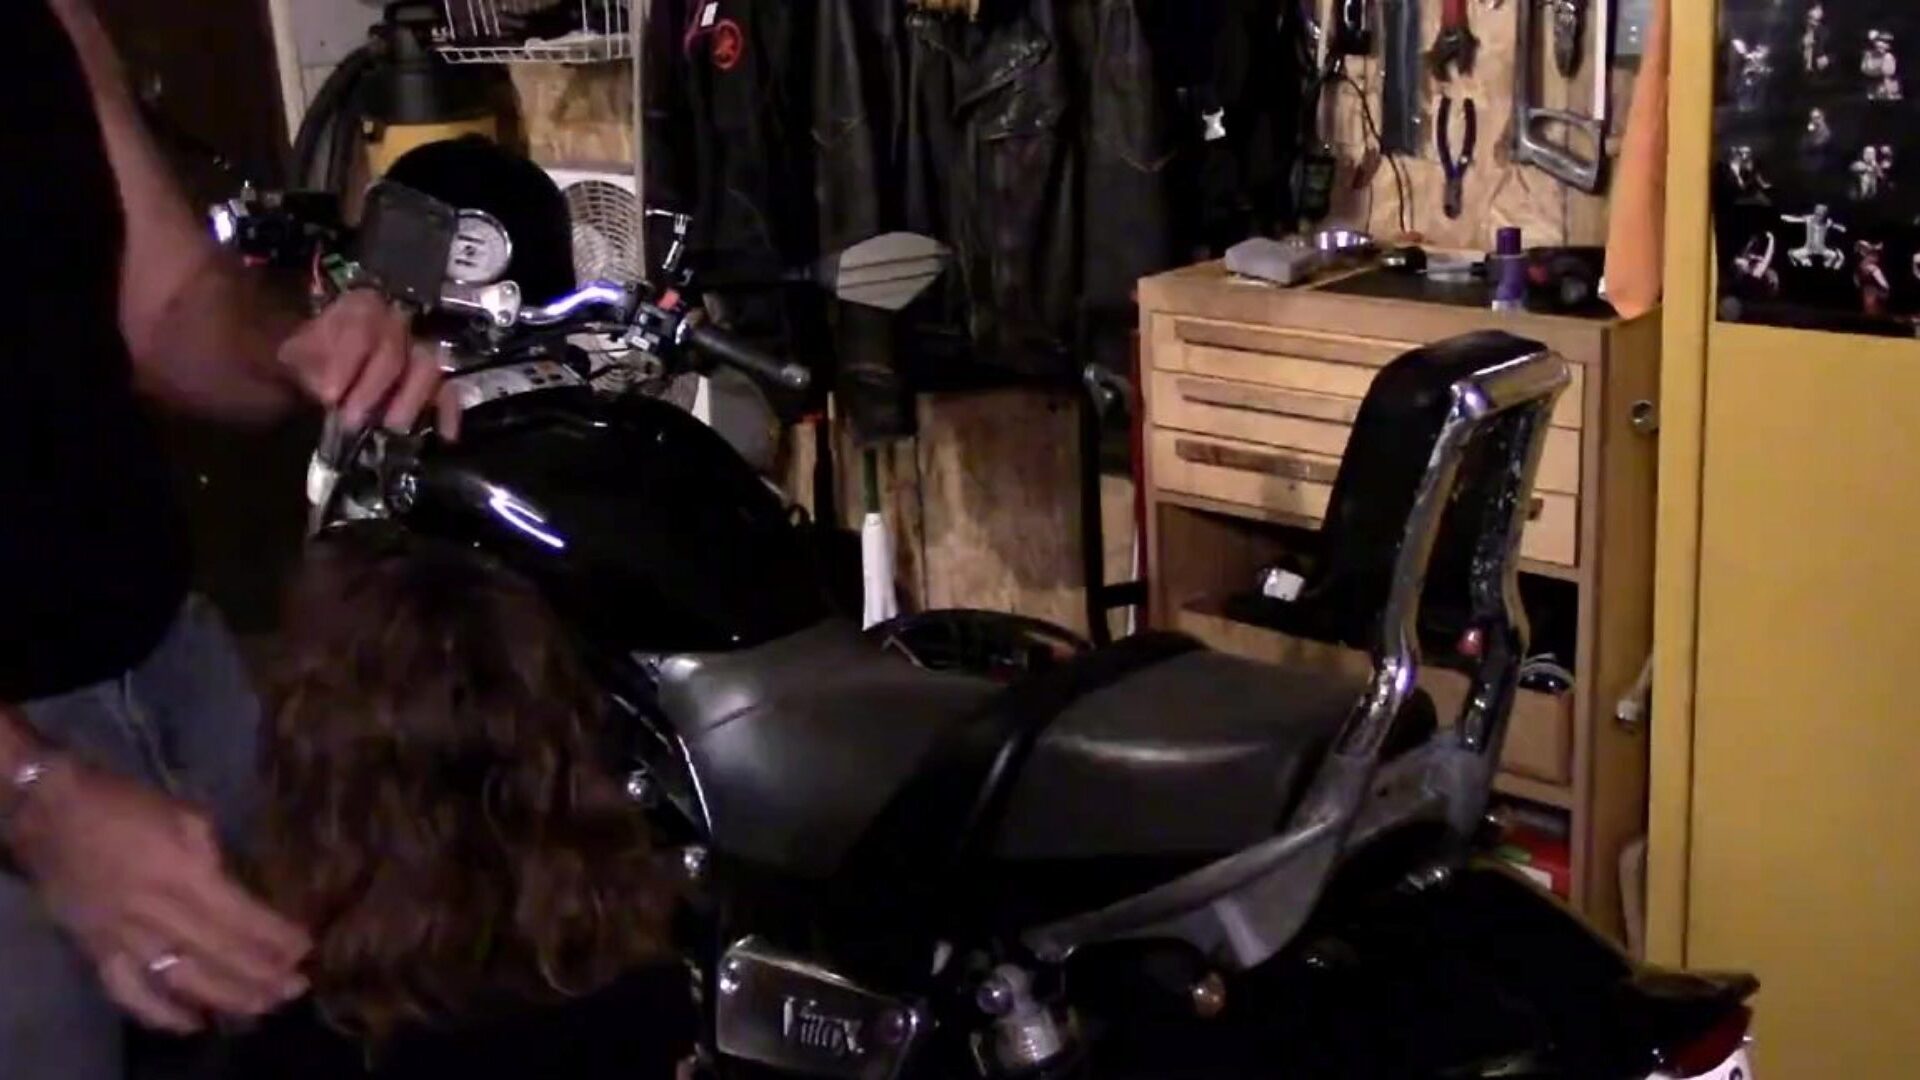 por favor, goze na minha bunda  motoqueiro, me deixa foder seu traseiro perfeito inclinado sobre a minha moto painal (grátis)